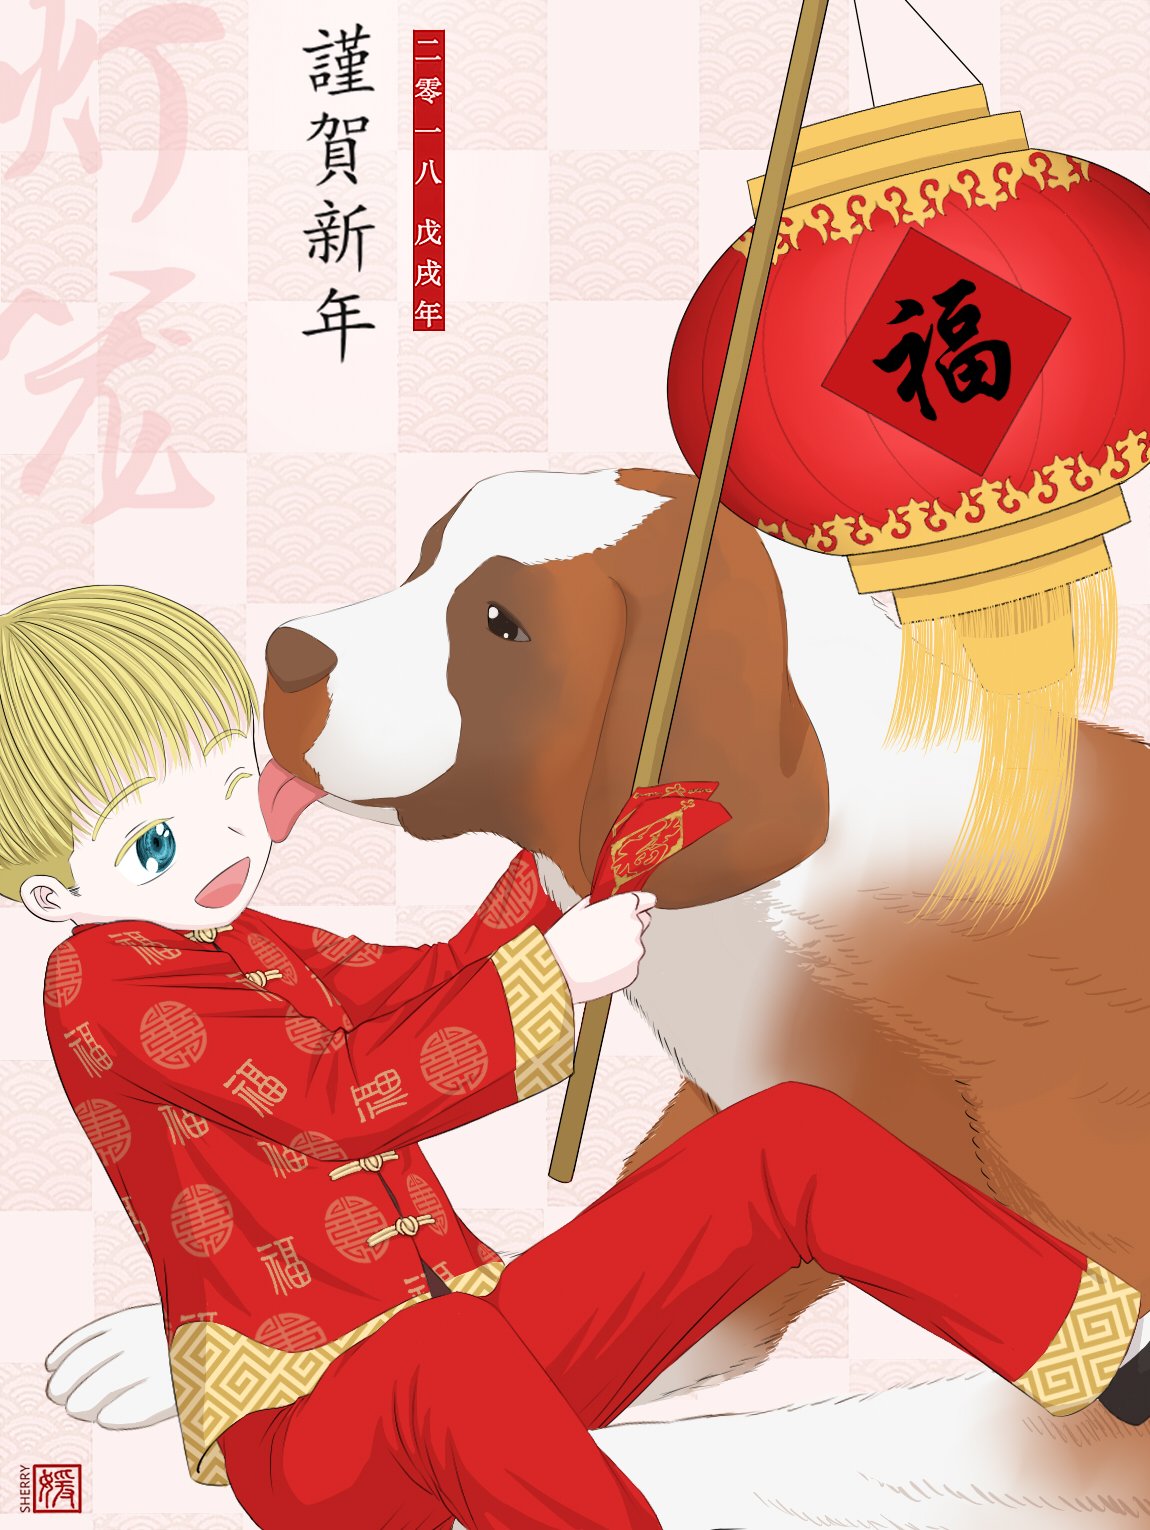 Sherry Tian Fanart Satou In Ajin Happy Chinese New Year People The Year Of Dogie 新春快乐 狗年大吉 亜人 佐藤 Ajin Satou 狗年大吉 春节 T Co Qbsfqfmw64